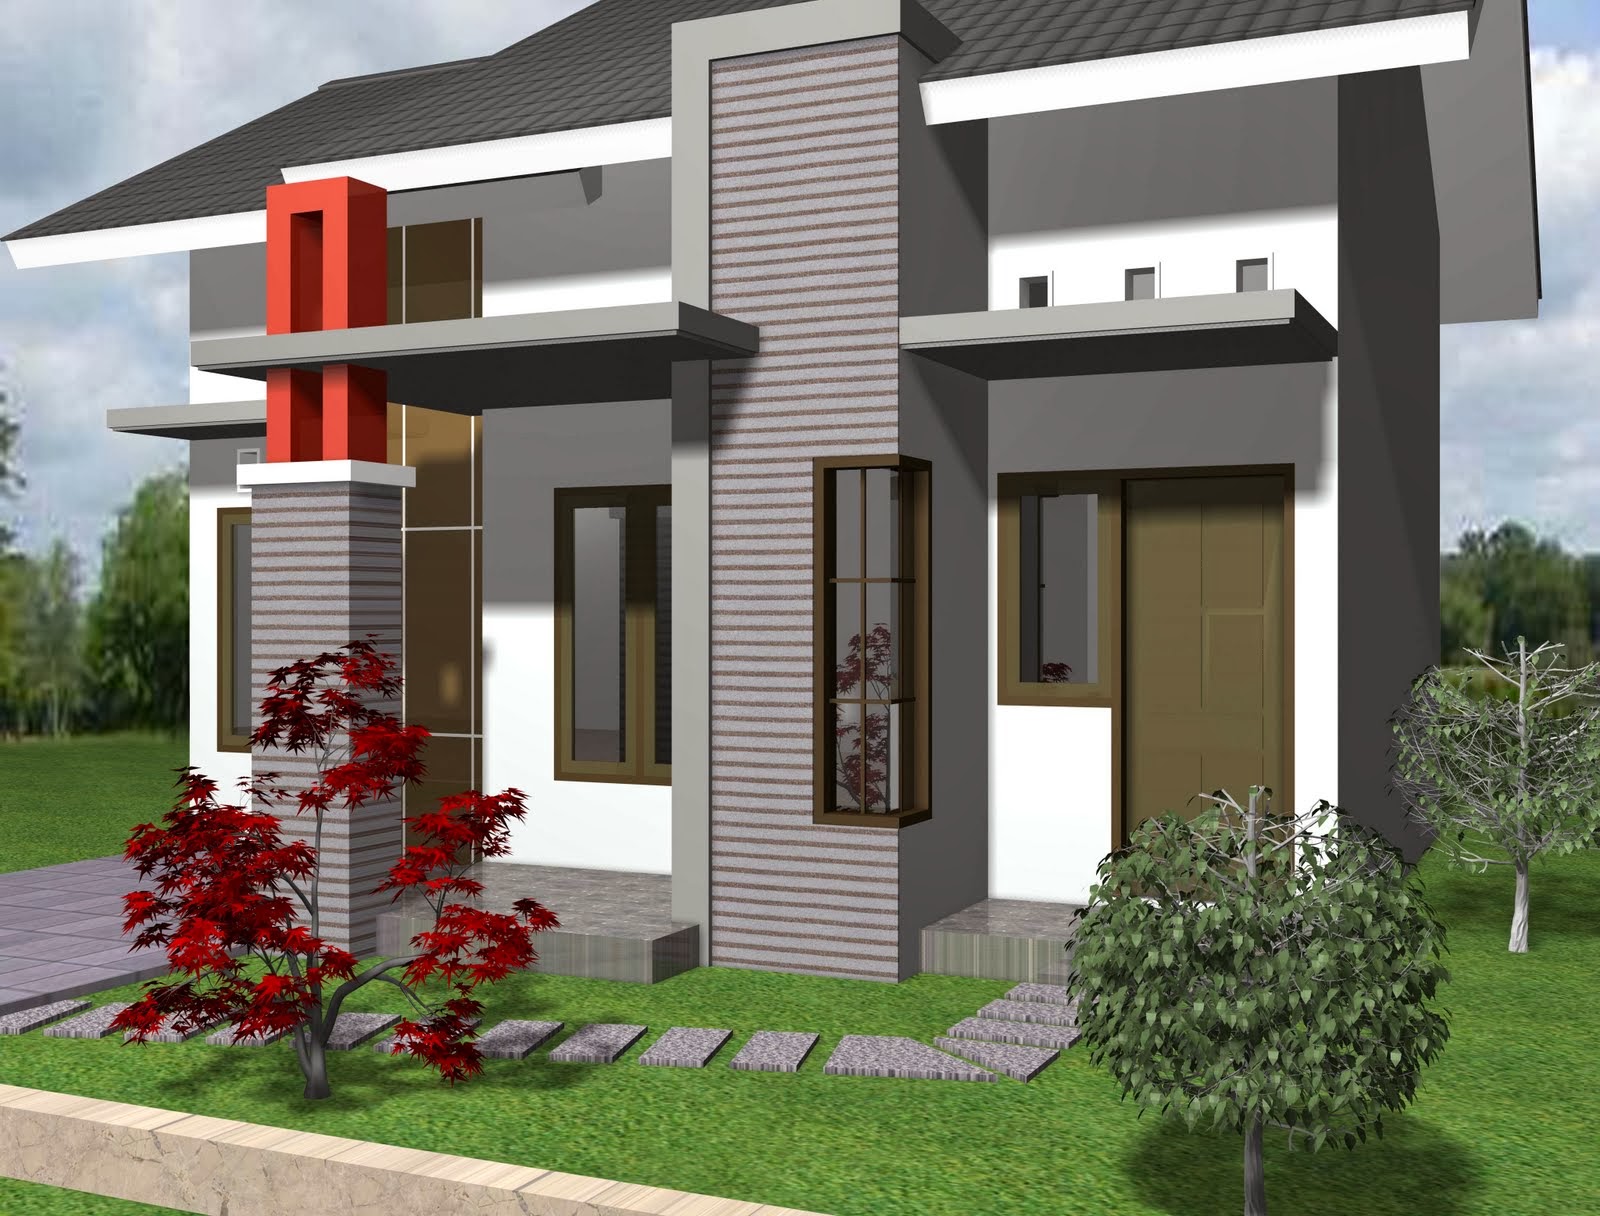 Gambar Desain Rumah Minimalis Sederhana Lantai 1 Terbaru 